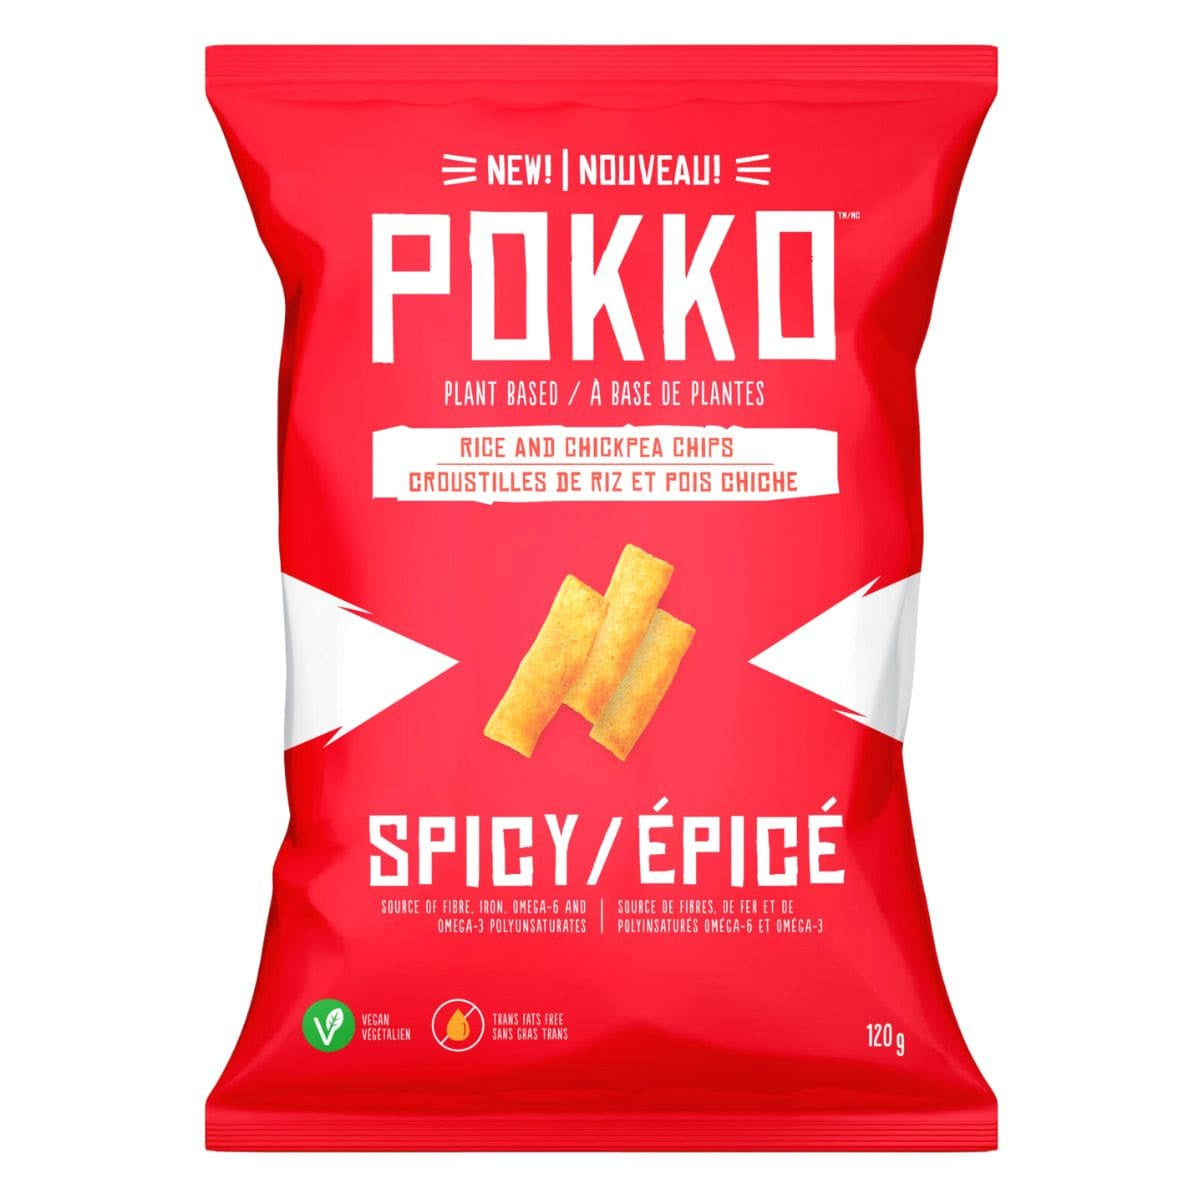 Pokko Chips